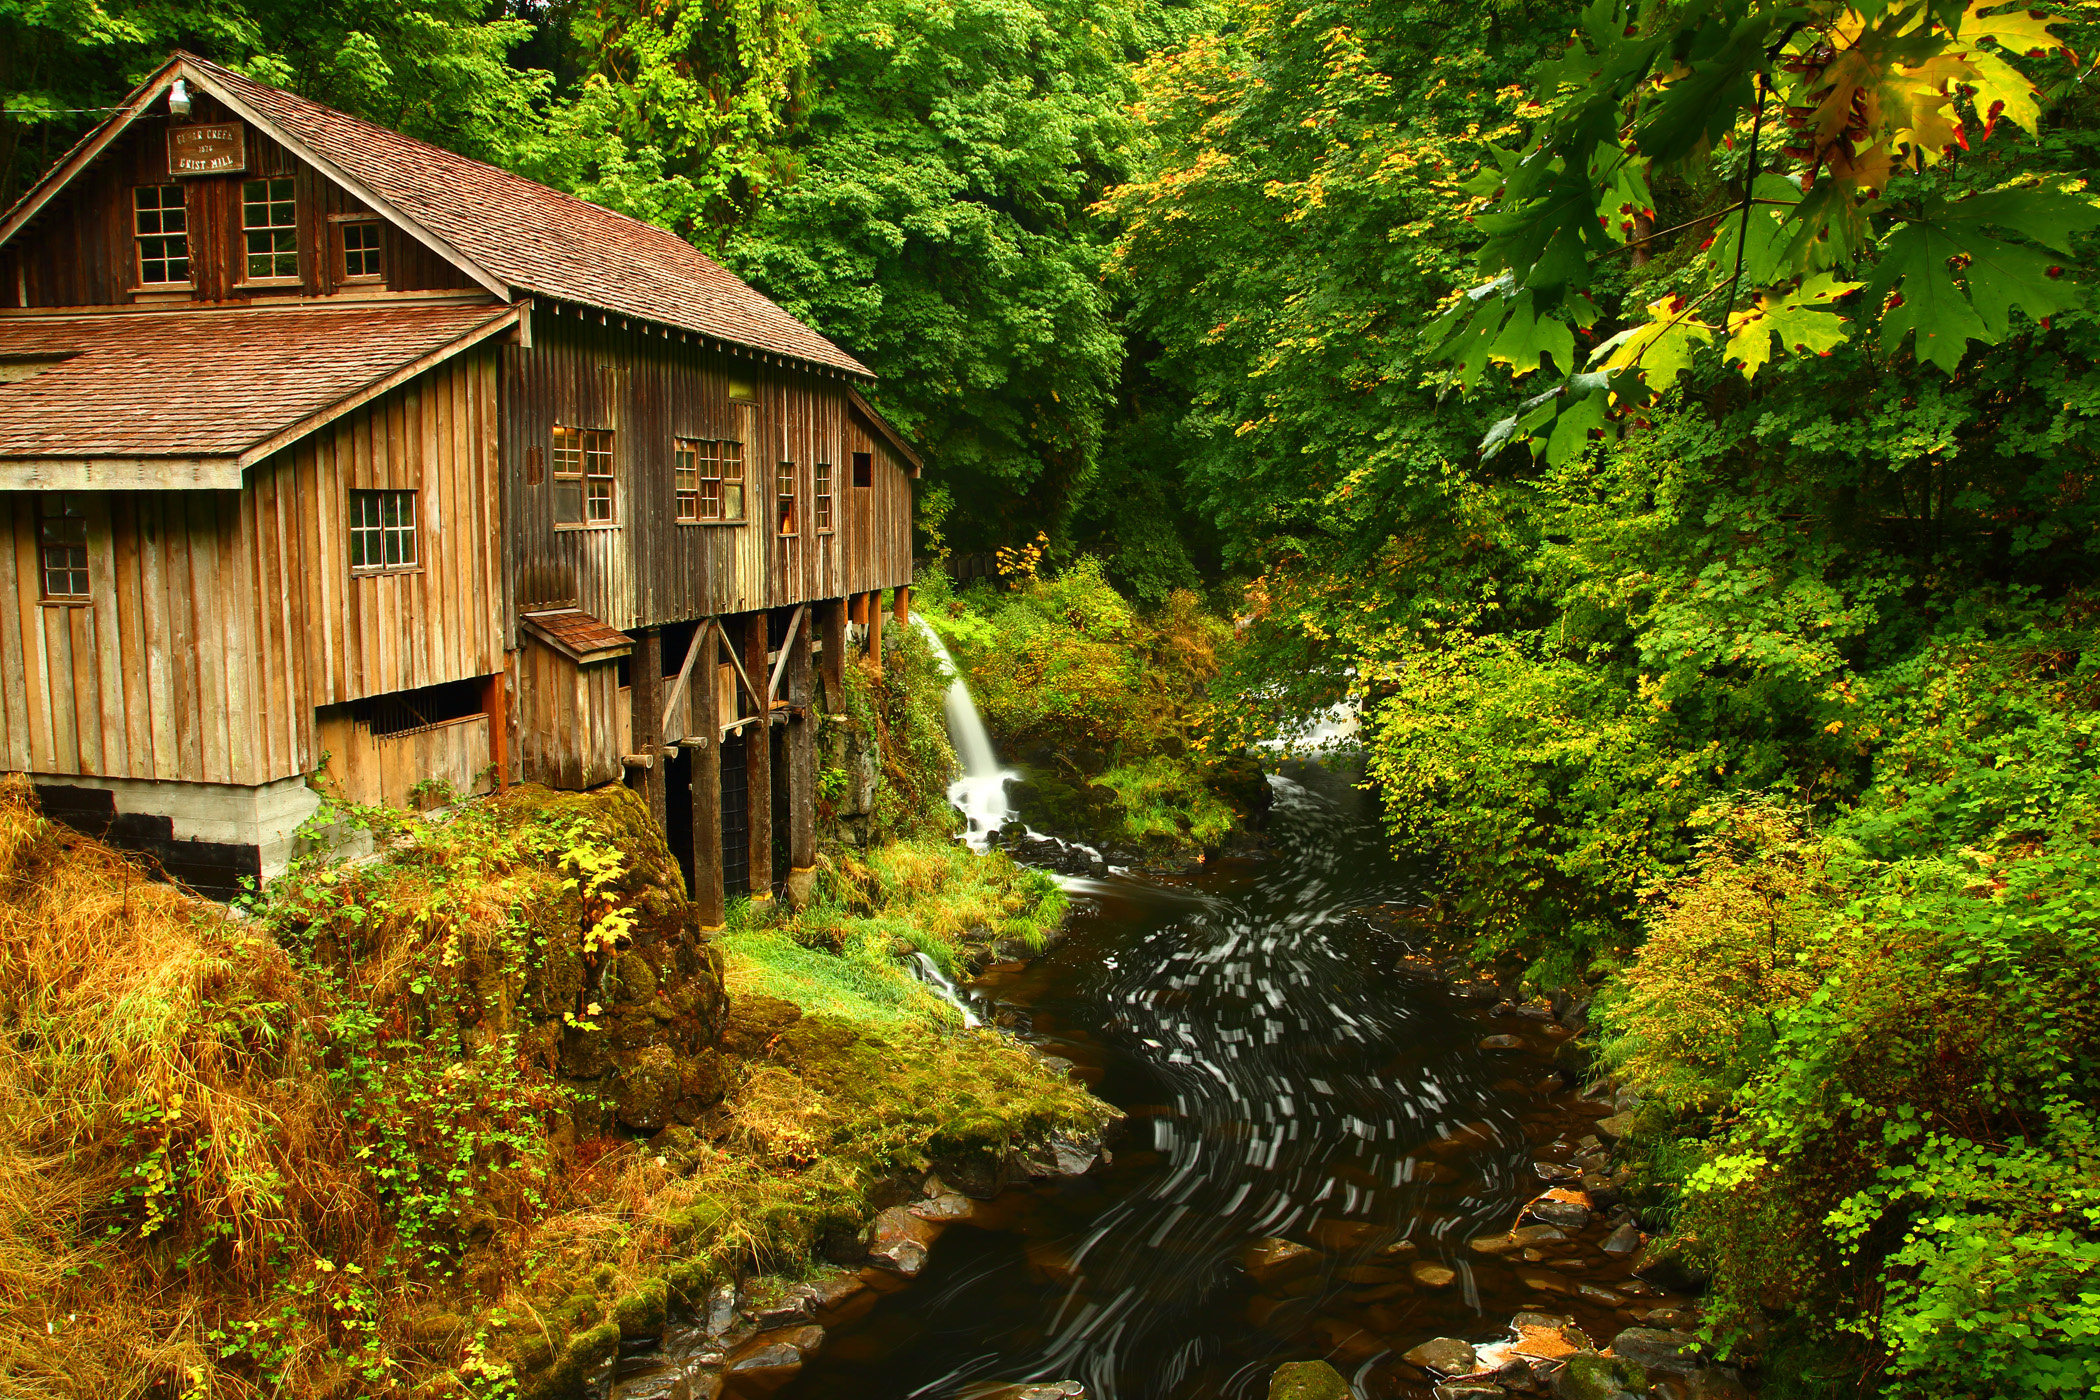 cedar, Creek, Grist, Mill, Autumn, River, Stream, Forest, House, Building, Fall Wallpaper